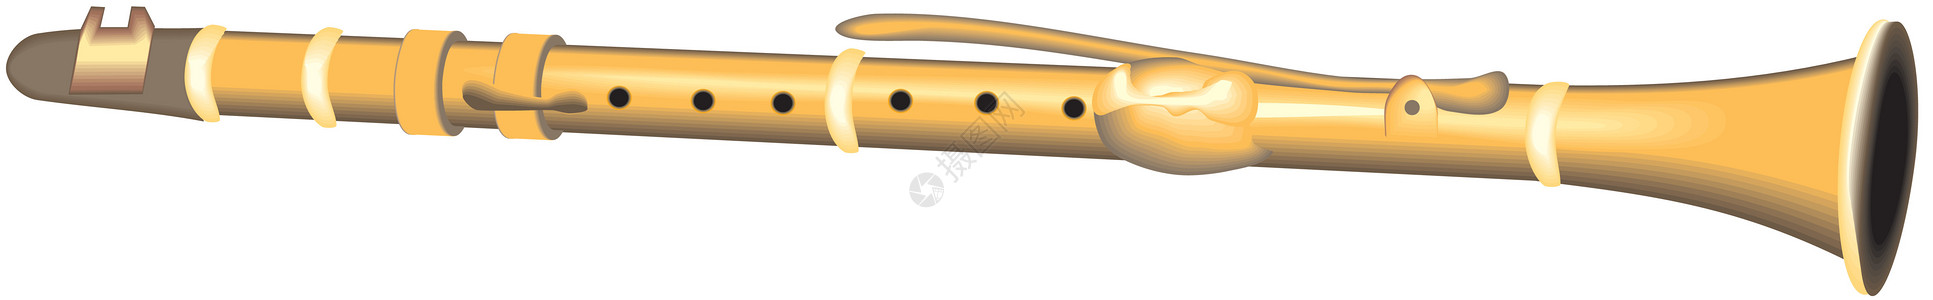 白笛钥匙乐器芦苇喇叭金子黄铜音乐交响乐插图歌曲图片